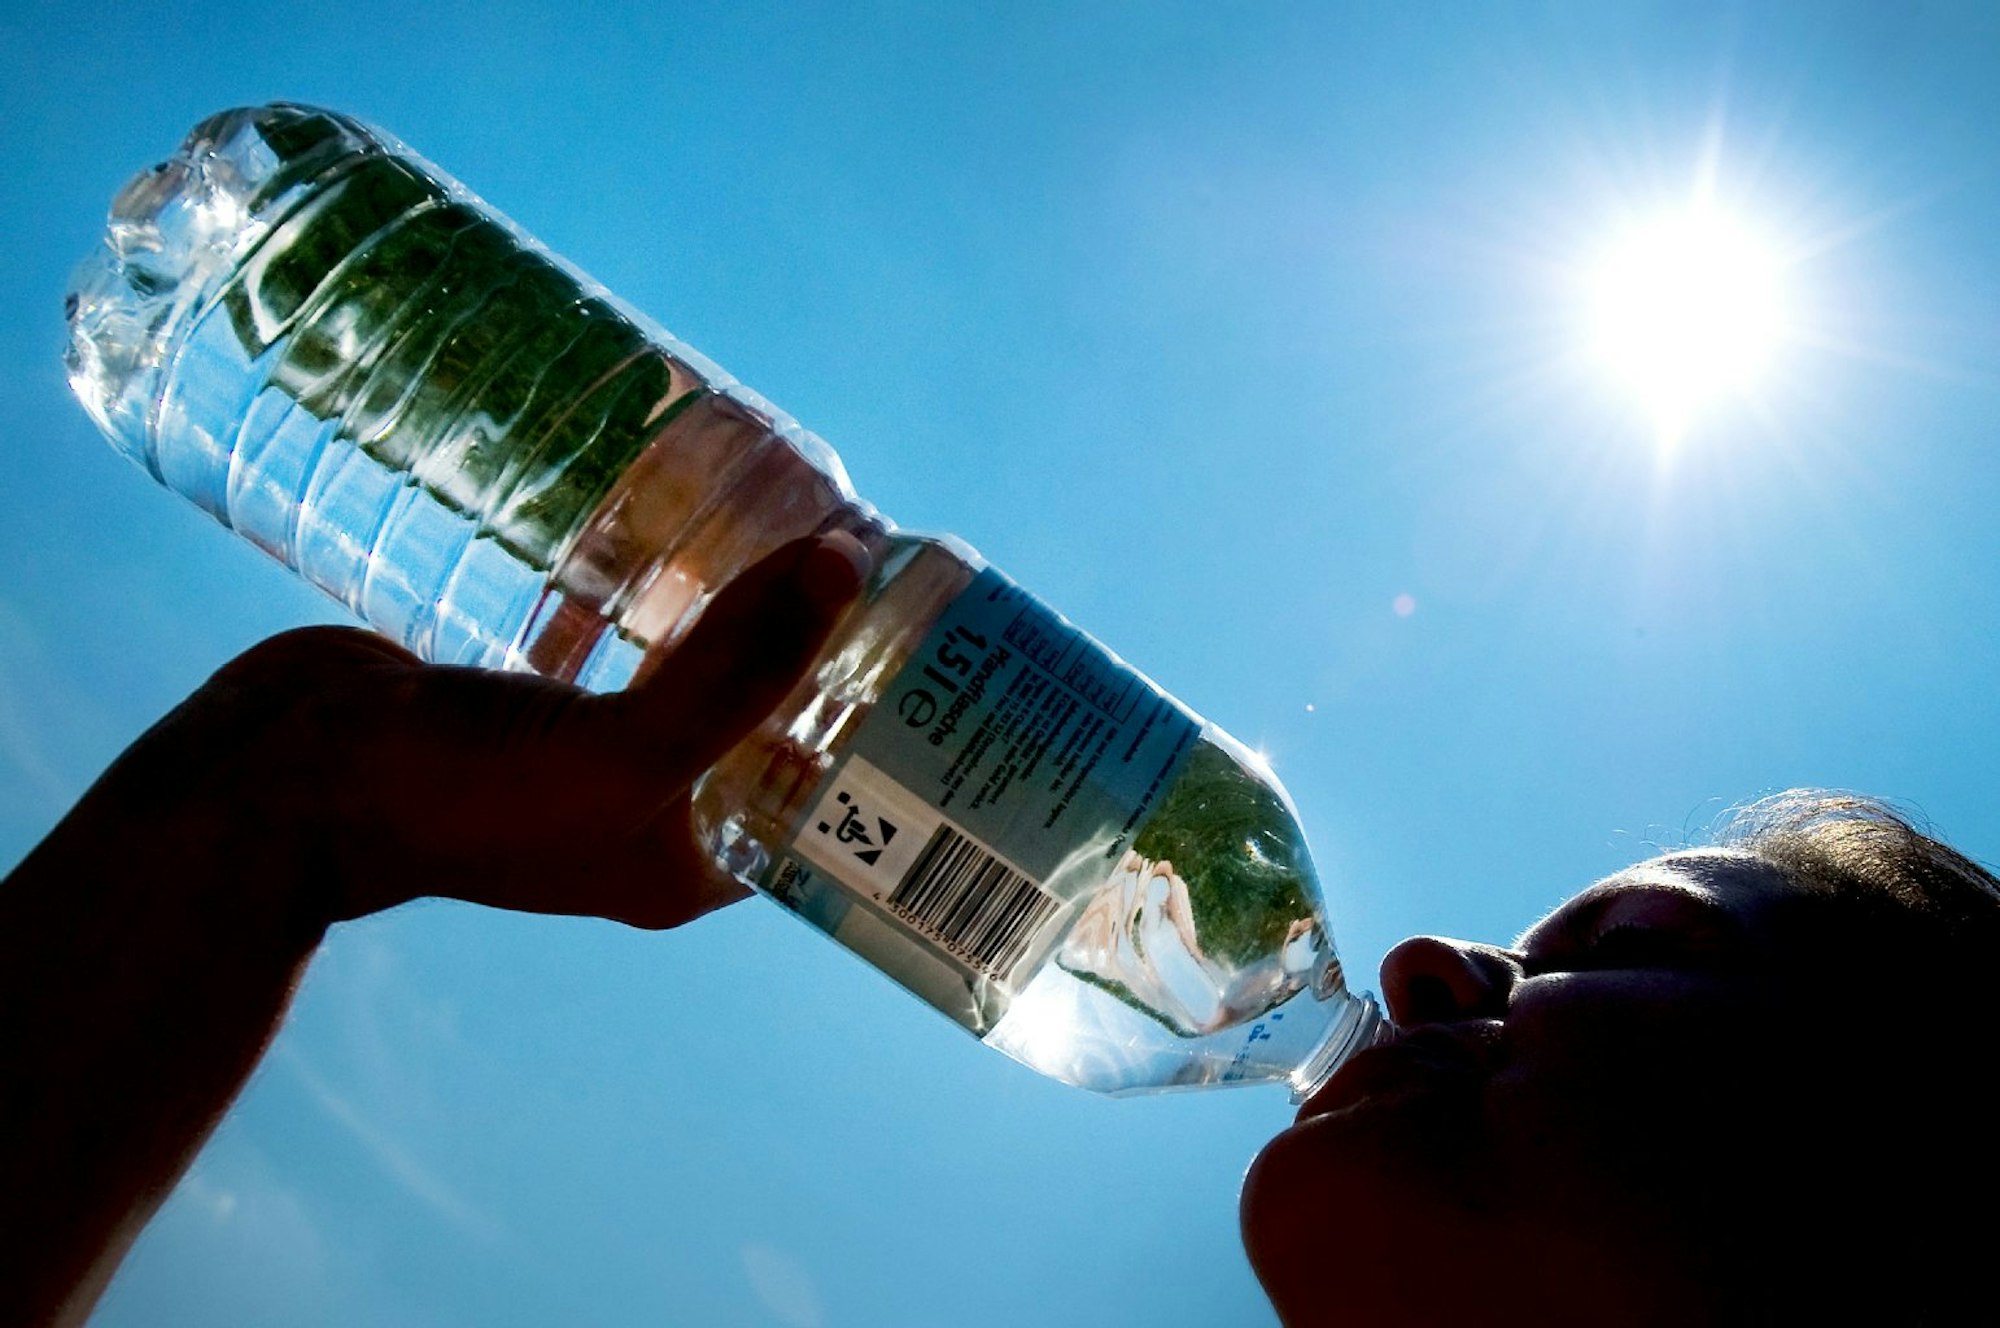 Mindestens 1,5 Liter am Tag zu trinken, gehört zu einer gesunden Ernährung dazu - am besten ungesüßtes wie Wasser.